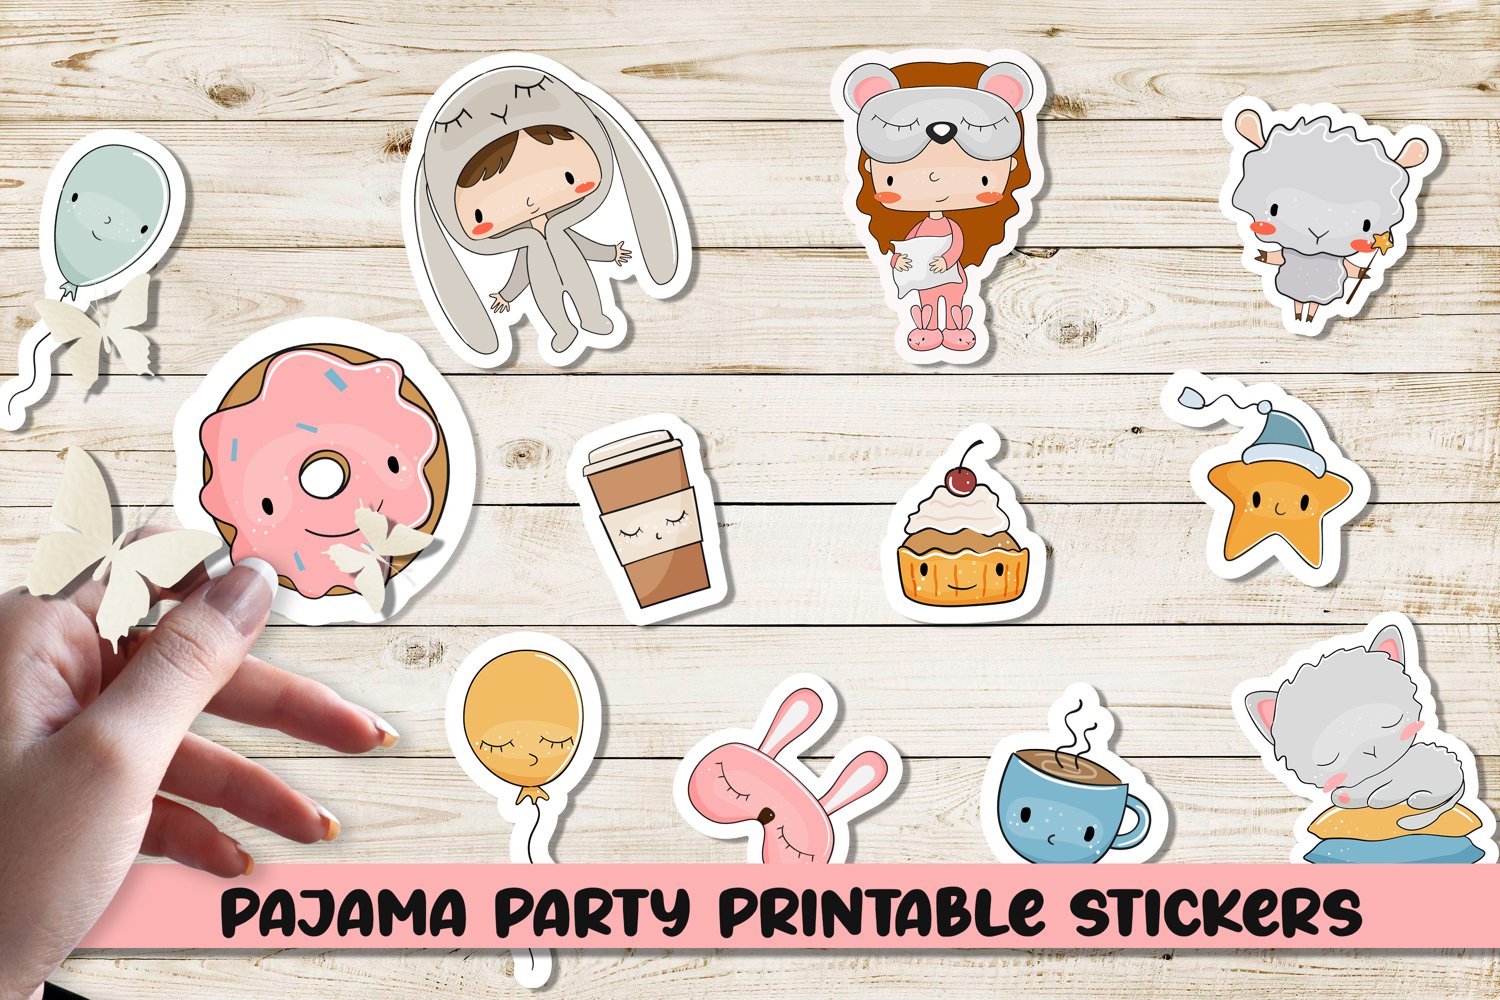 Pajama party printable stickers.